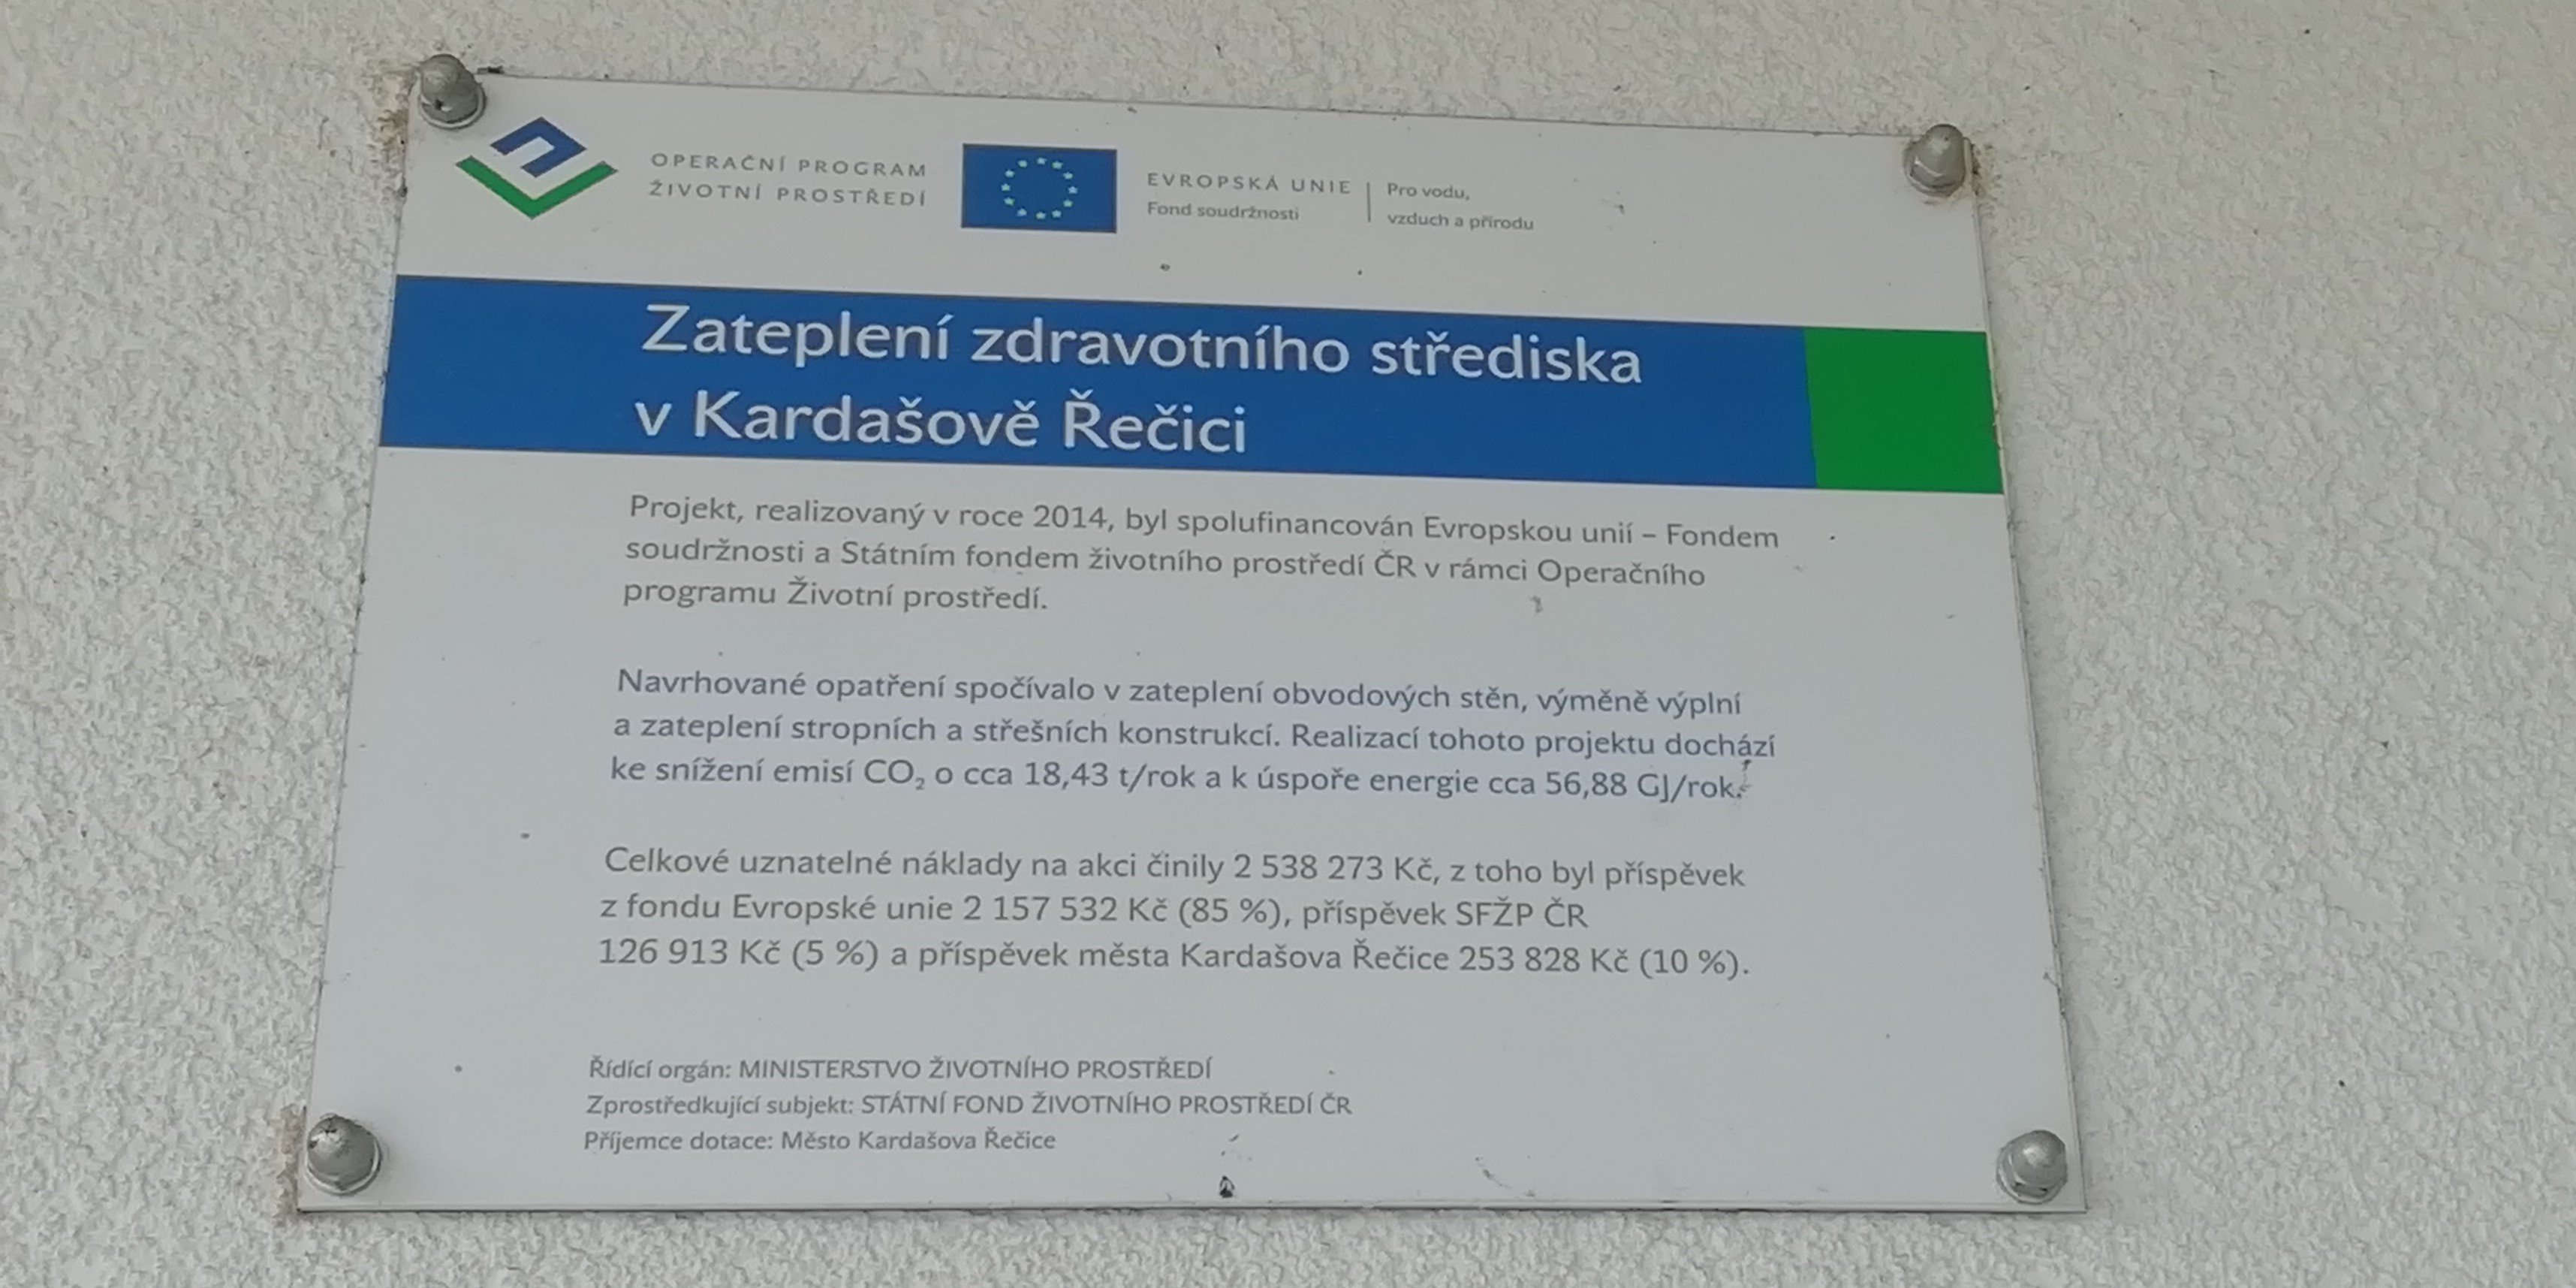 Zateplení zdravotního střediska v Kardašově Řečici